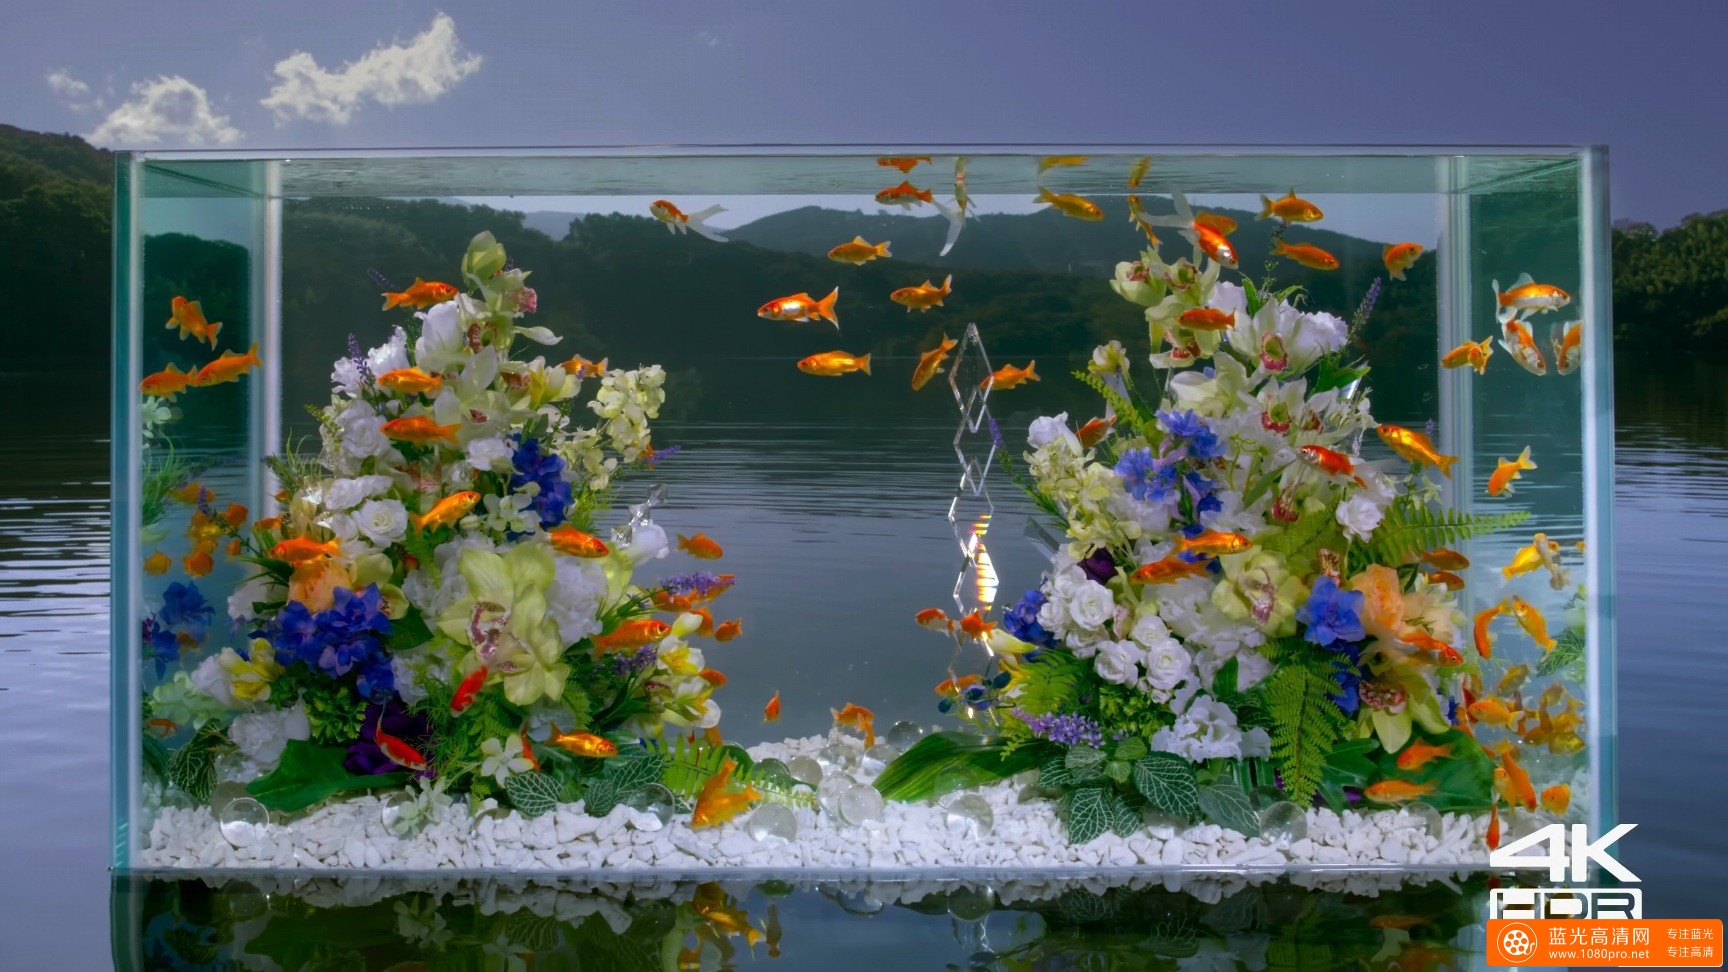 水族馆Real 4K HDR 60fps Panasonic Aquarium[webm/428M]视频